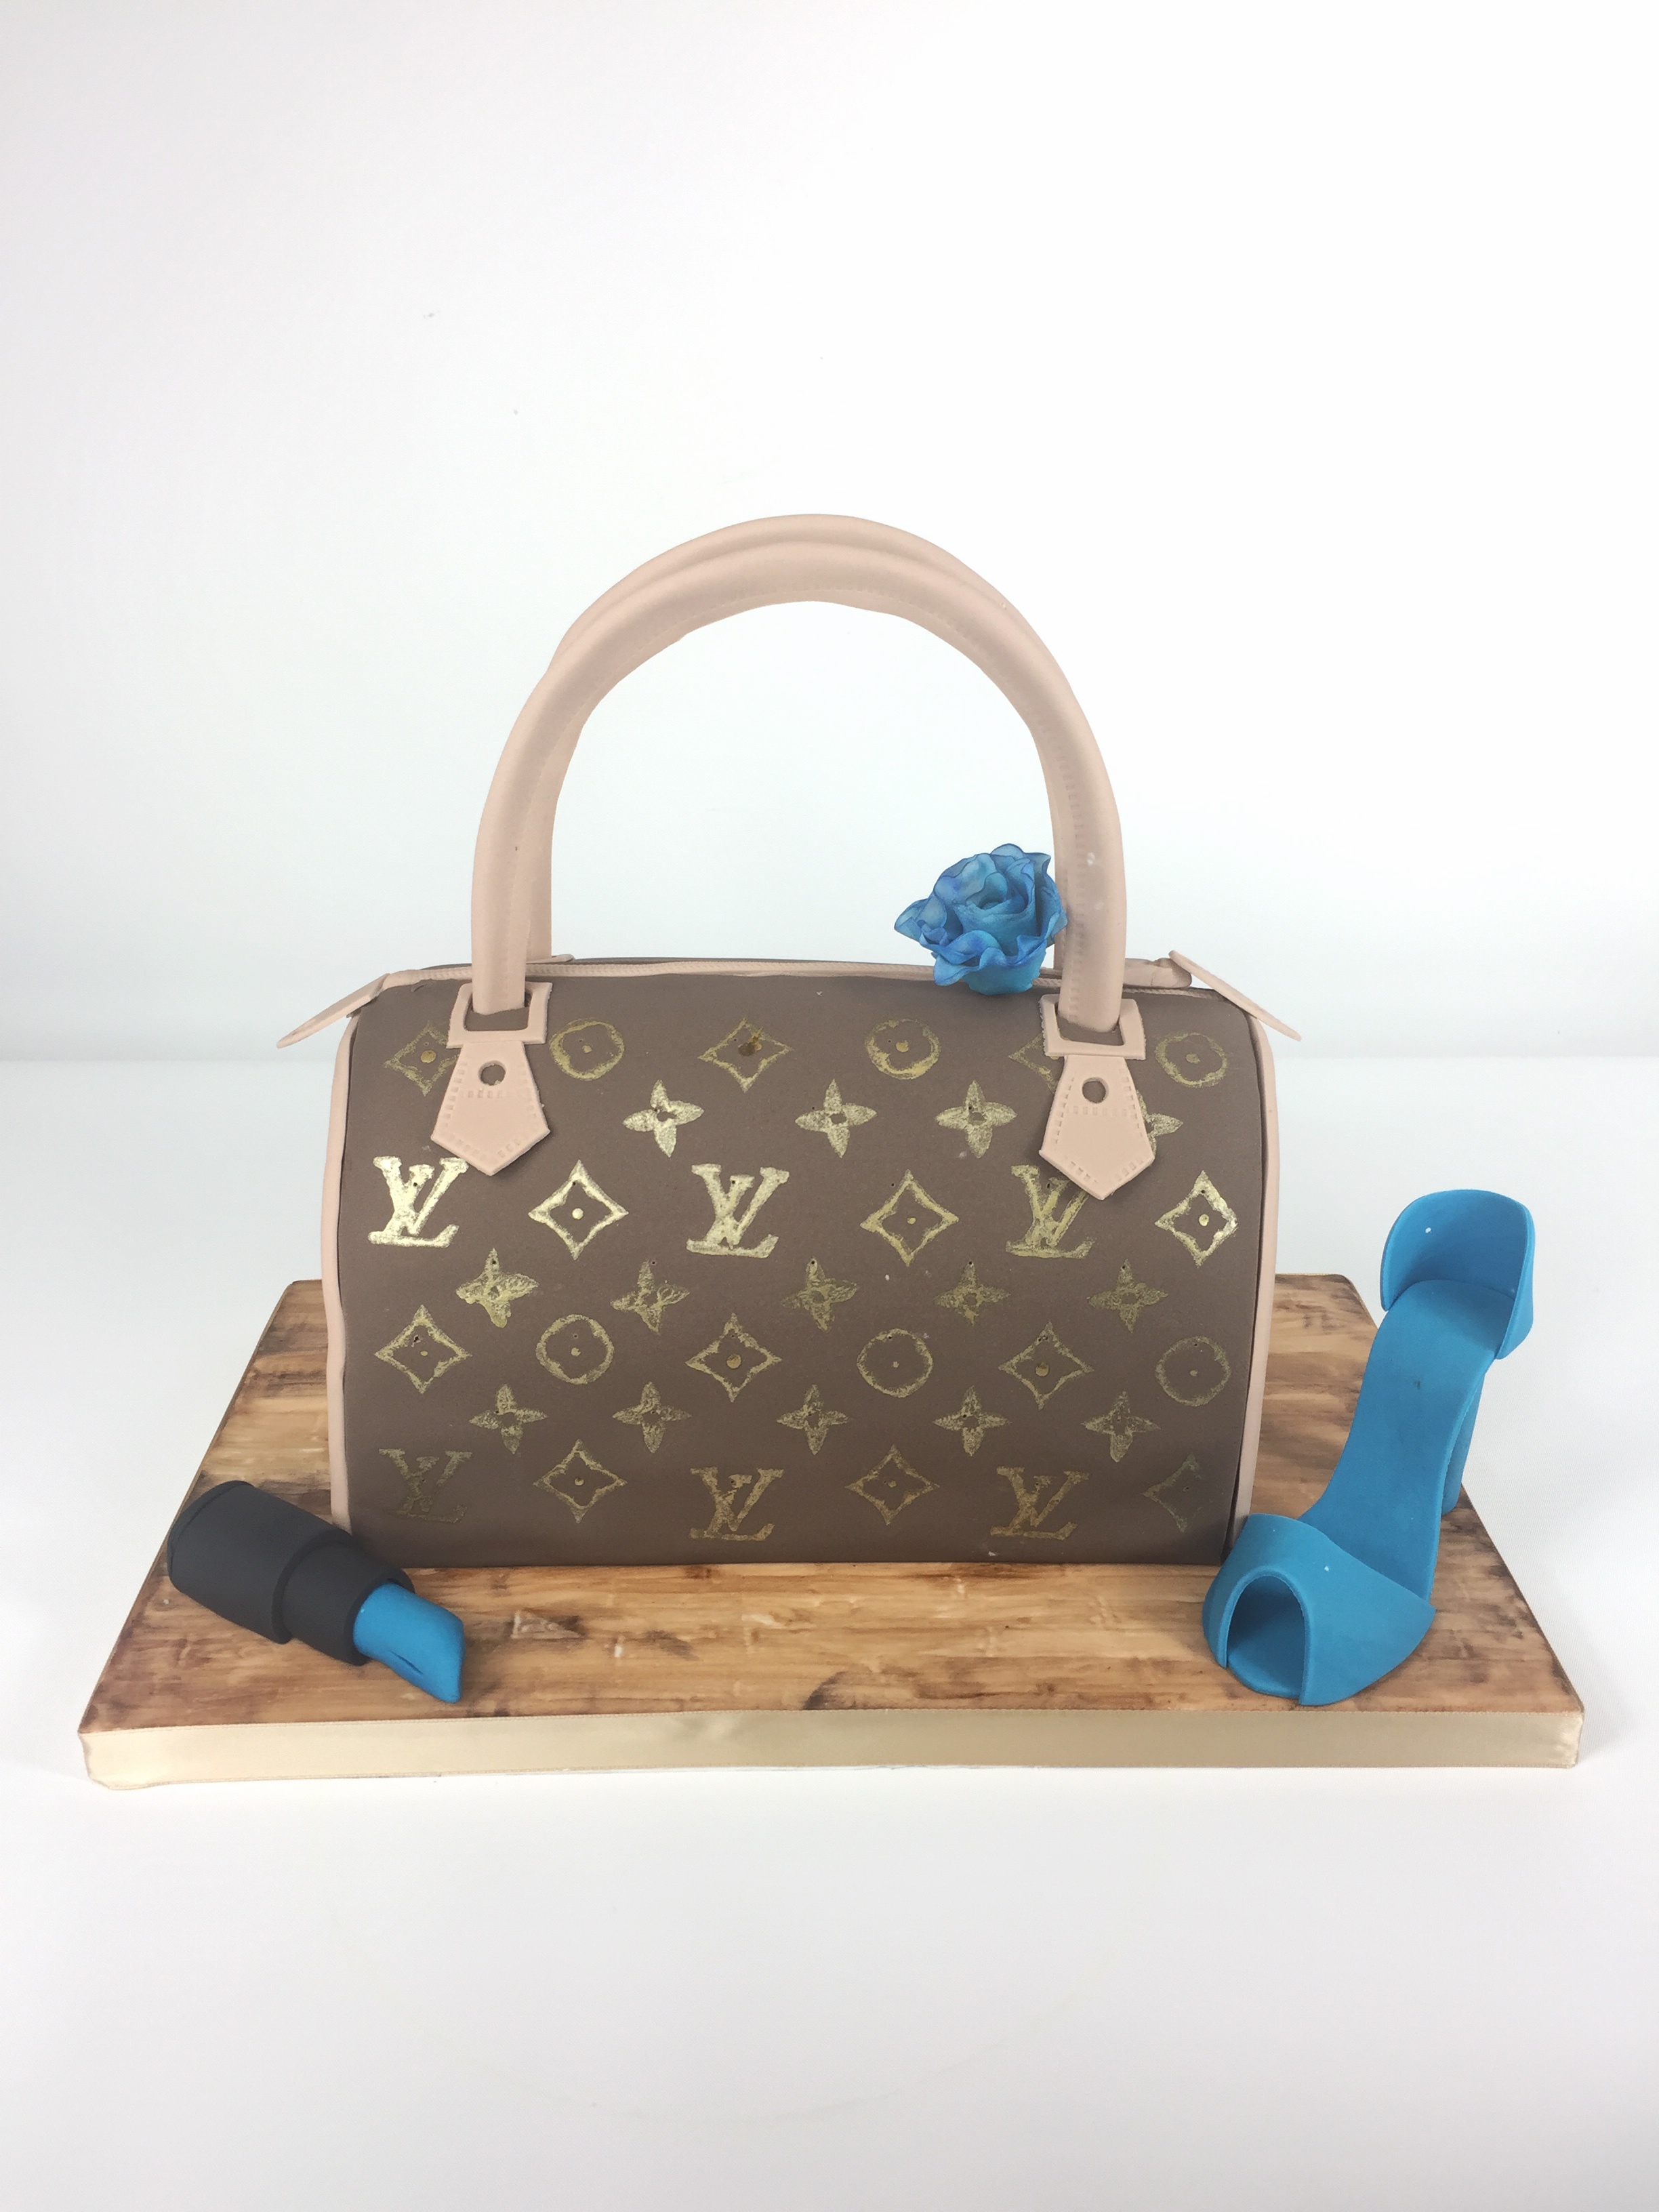 LV bag Designer Bags Cake, A Customize Designer Bags cake